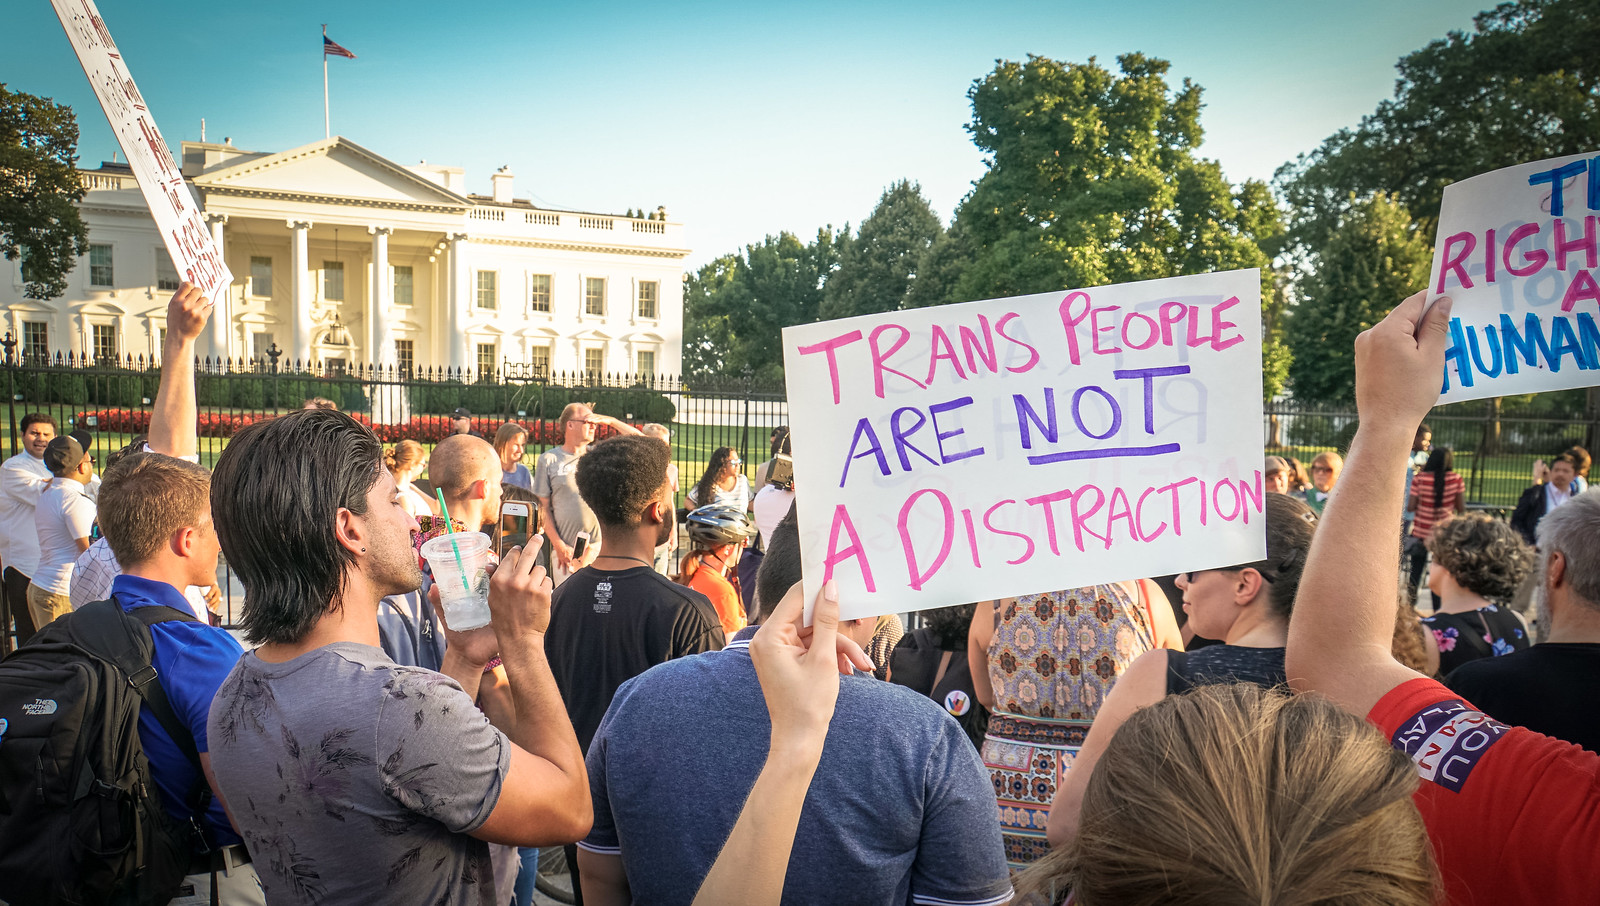 2017.07.26 Protest Trans Military Ban, White House, Washington DC USA 7645